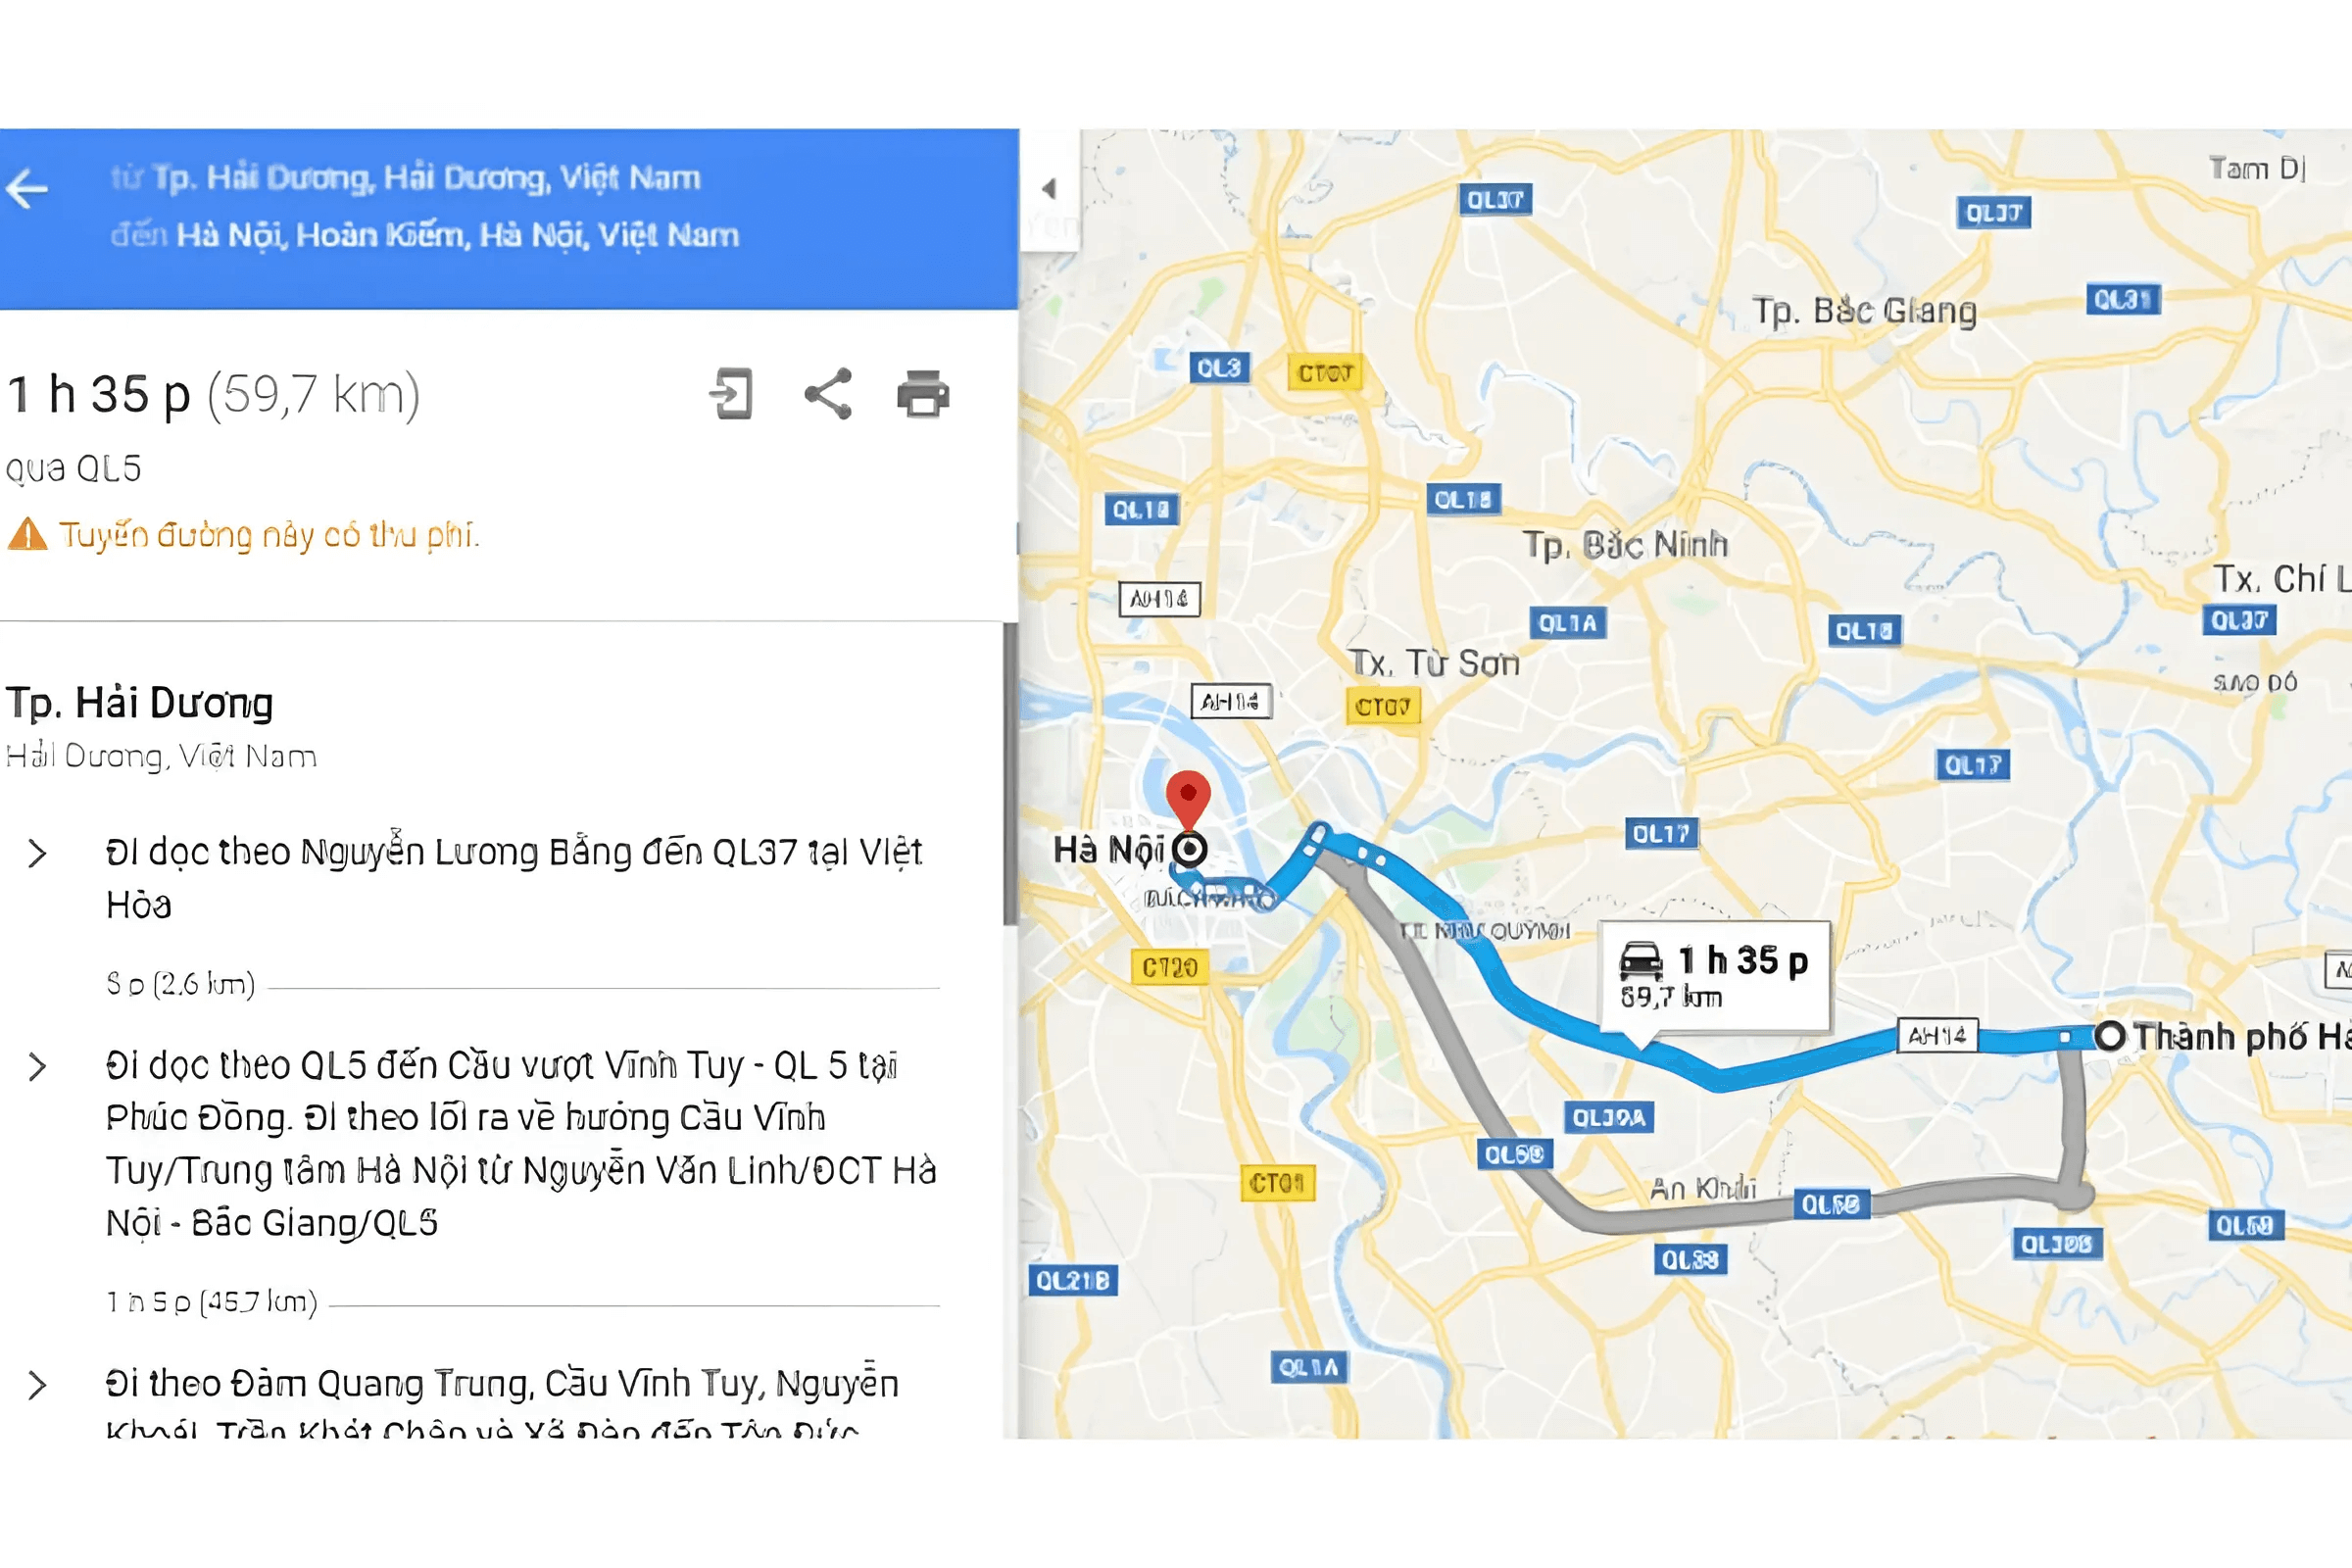 Tuyến đường 1 từ Hải Dương đến Hà Nội đi qua Quốc lộ 5 chỉ khoảng 59,7km